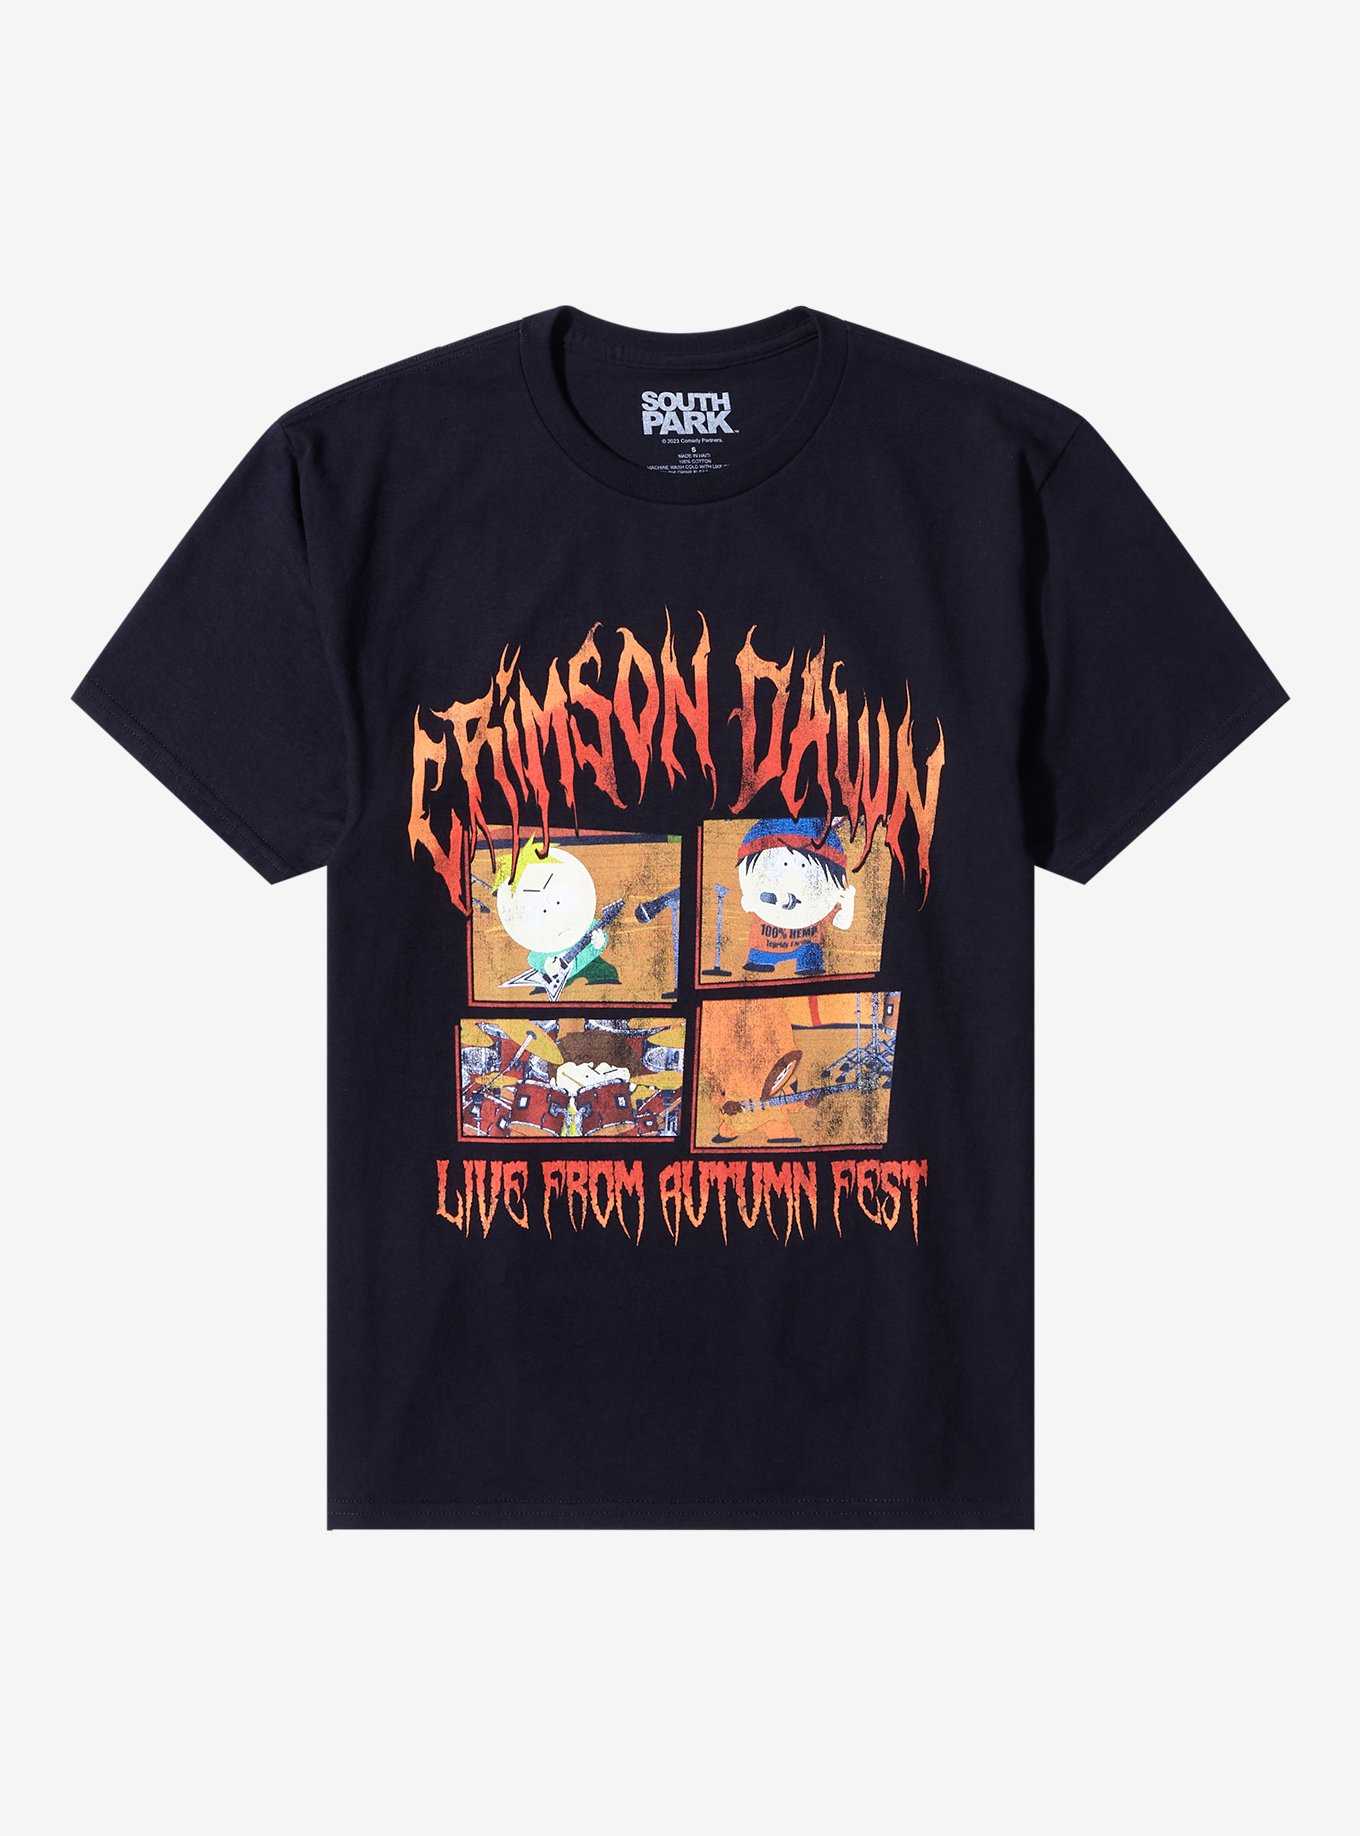 South Park Crimson Dawn Live Boyfriend Fit Girls T-Shirt, , hi-res